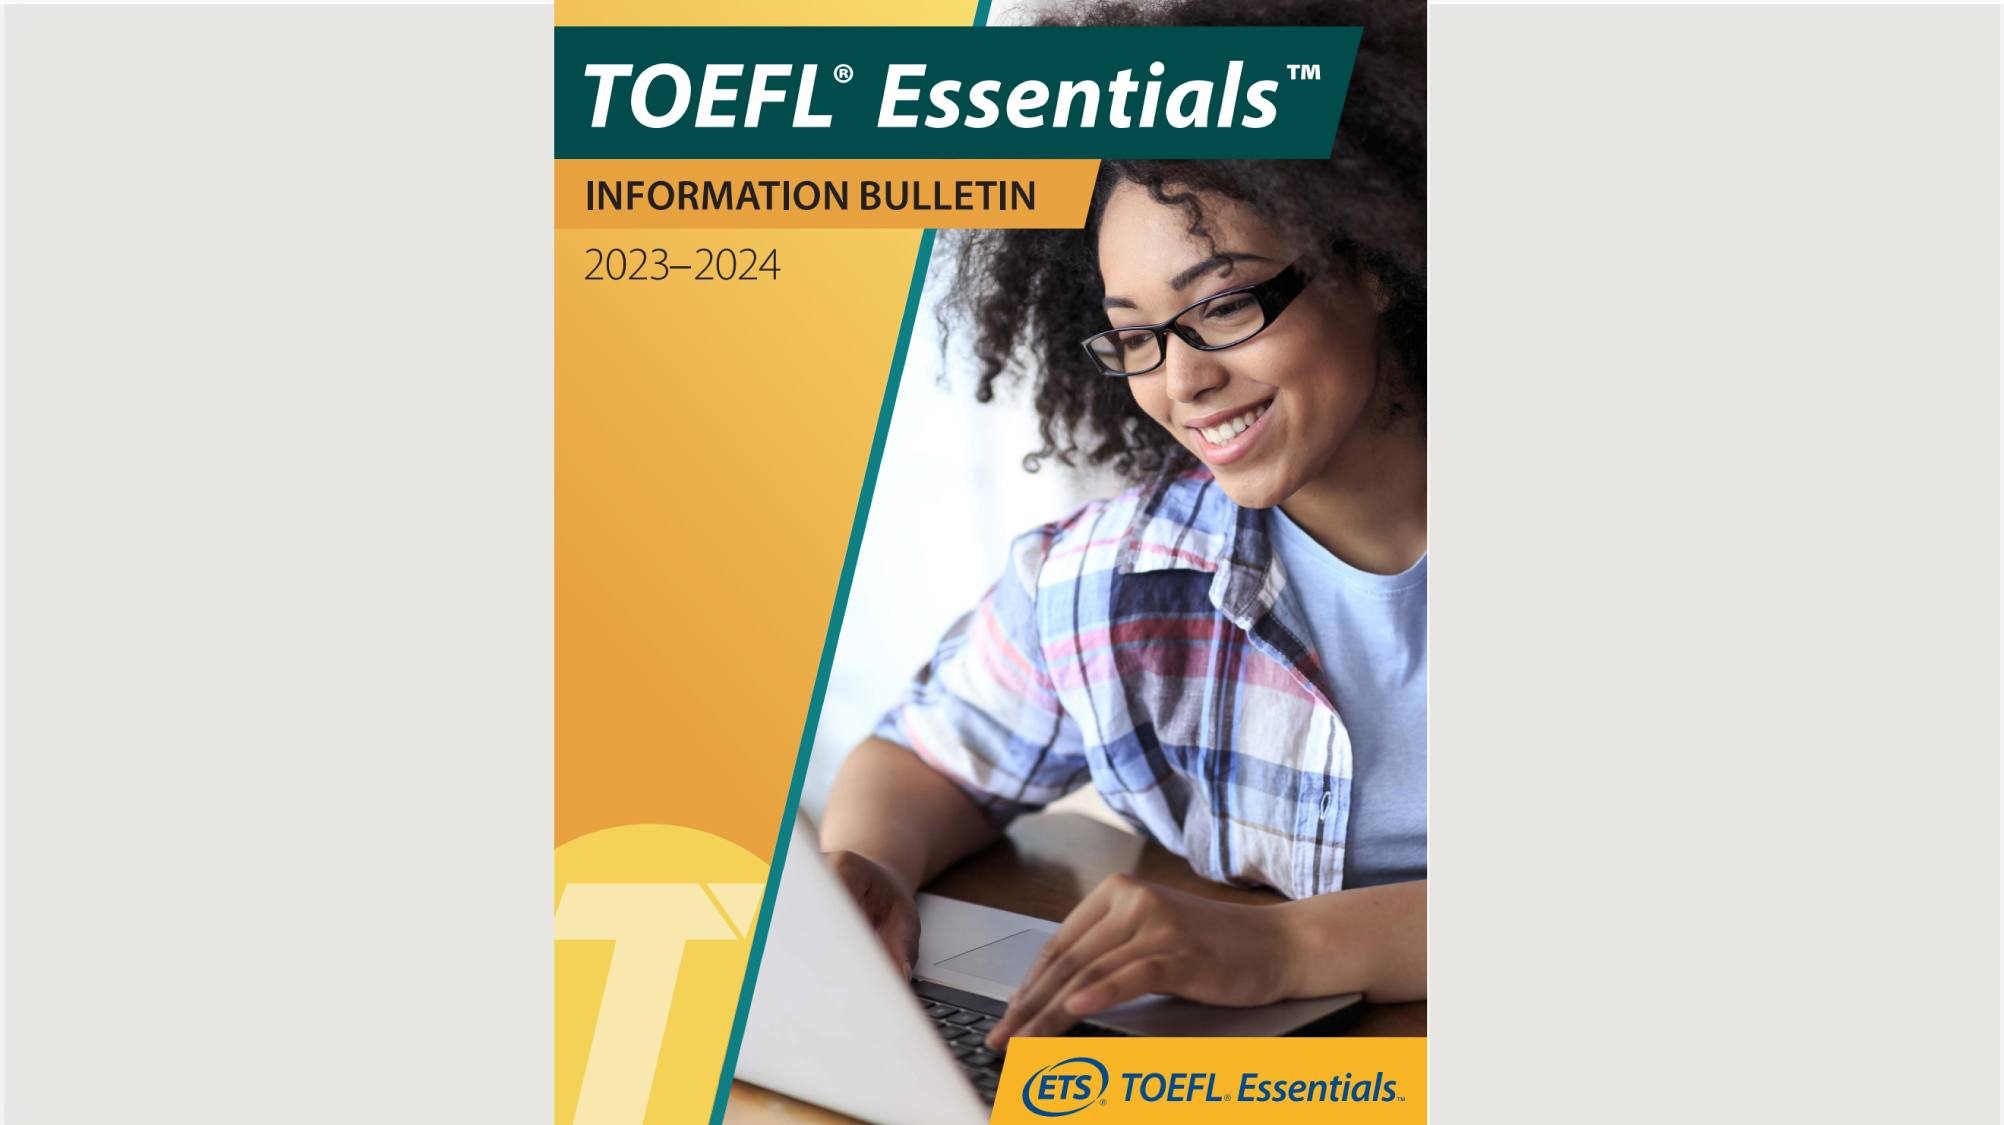 TOEFL Test Taker GUIDE